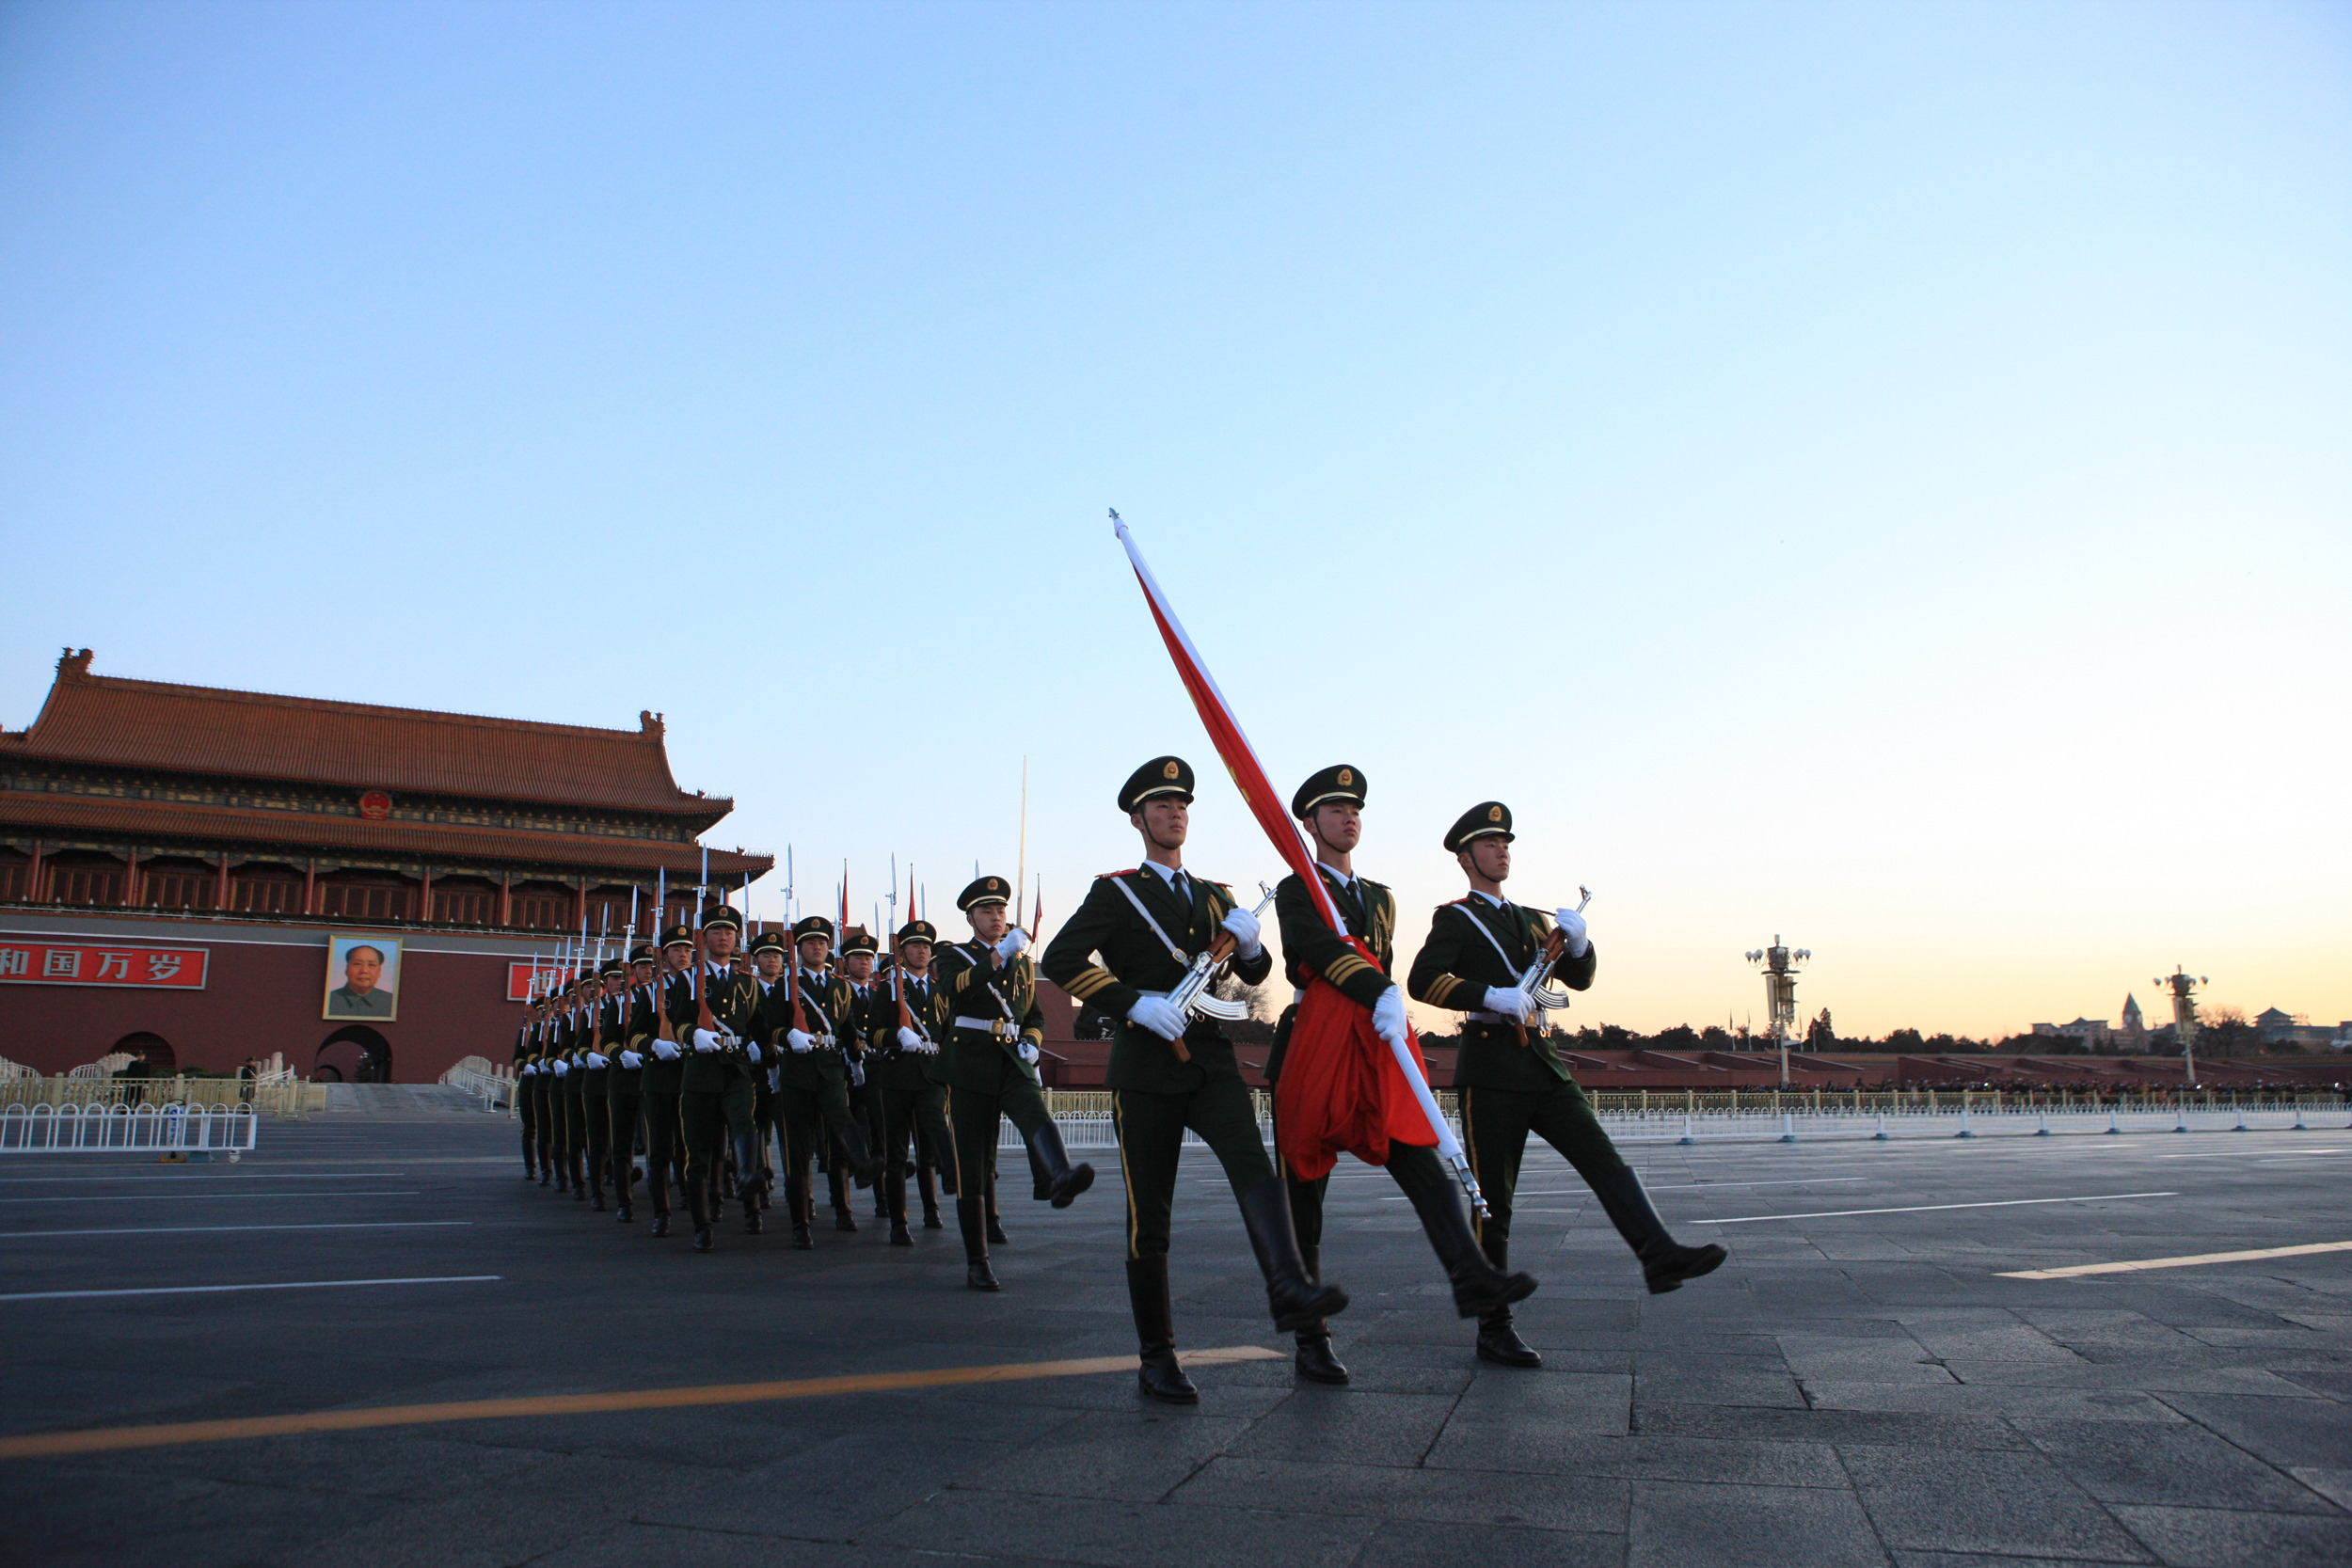 北京天安门广场2021年首次升旗仪式举行